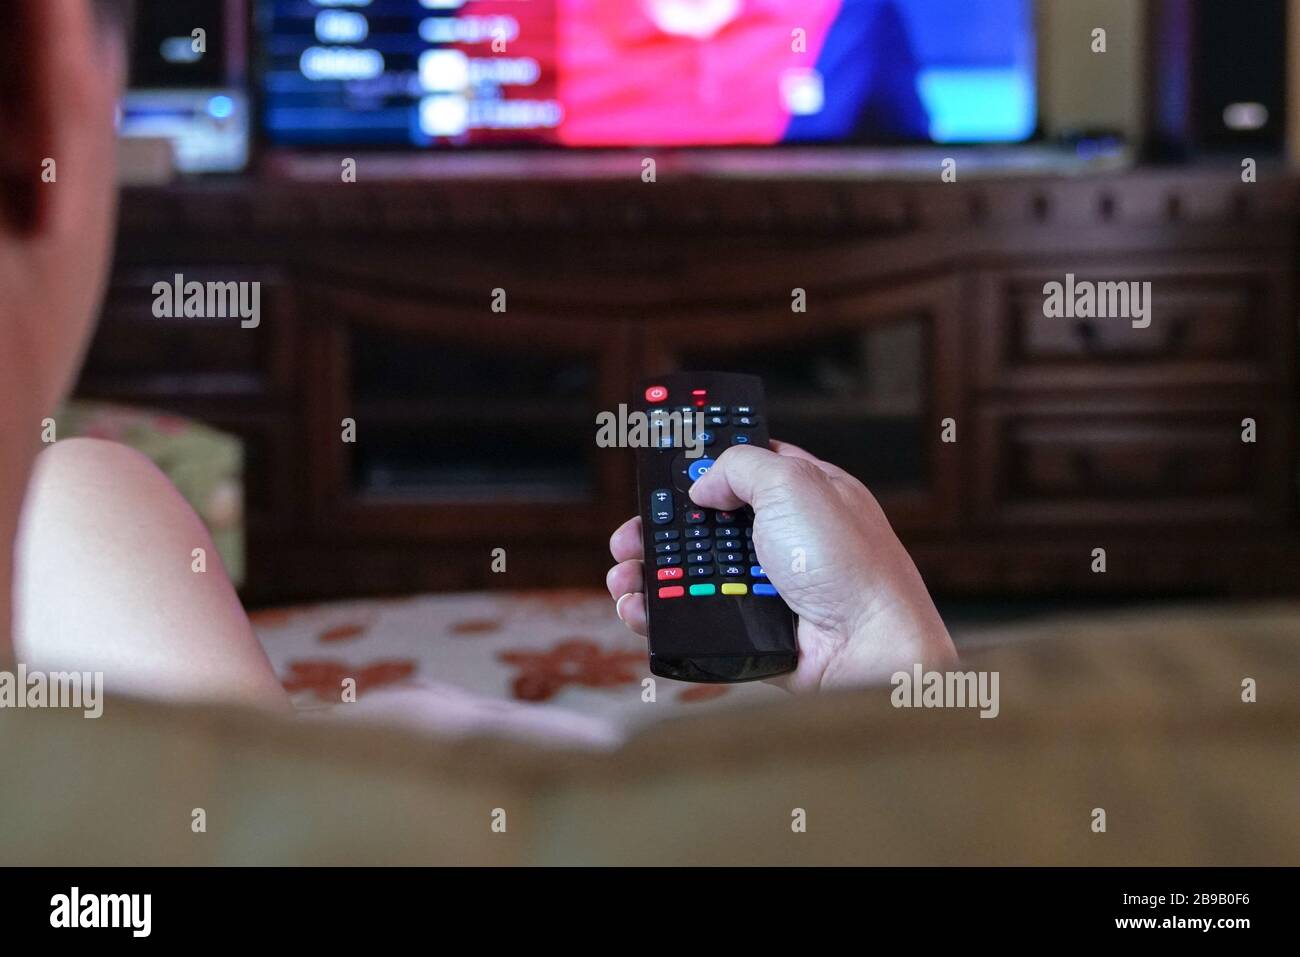 Uomo che guarda la tv con attenzione sulle mani sul telecomando. Home entertainment o concetto di soggiorno a casa. Foto Stock